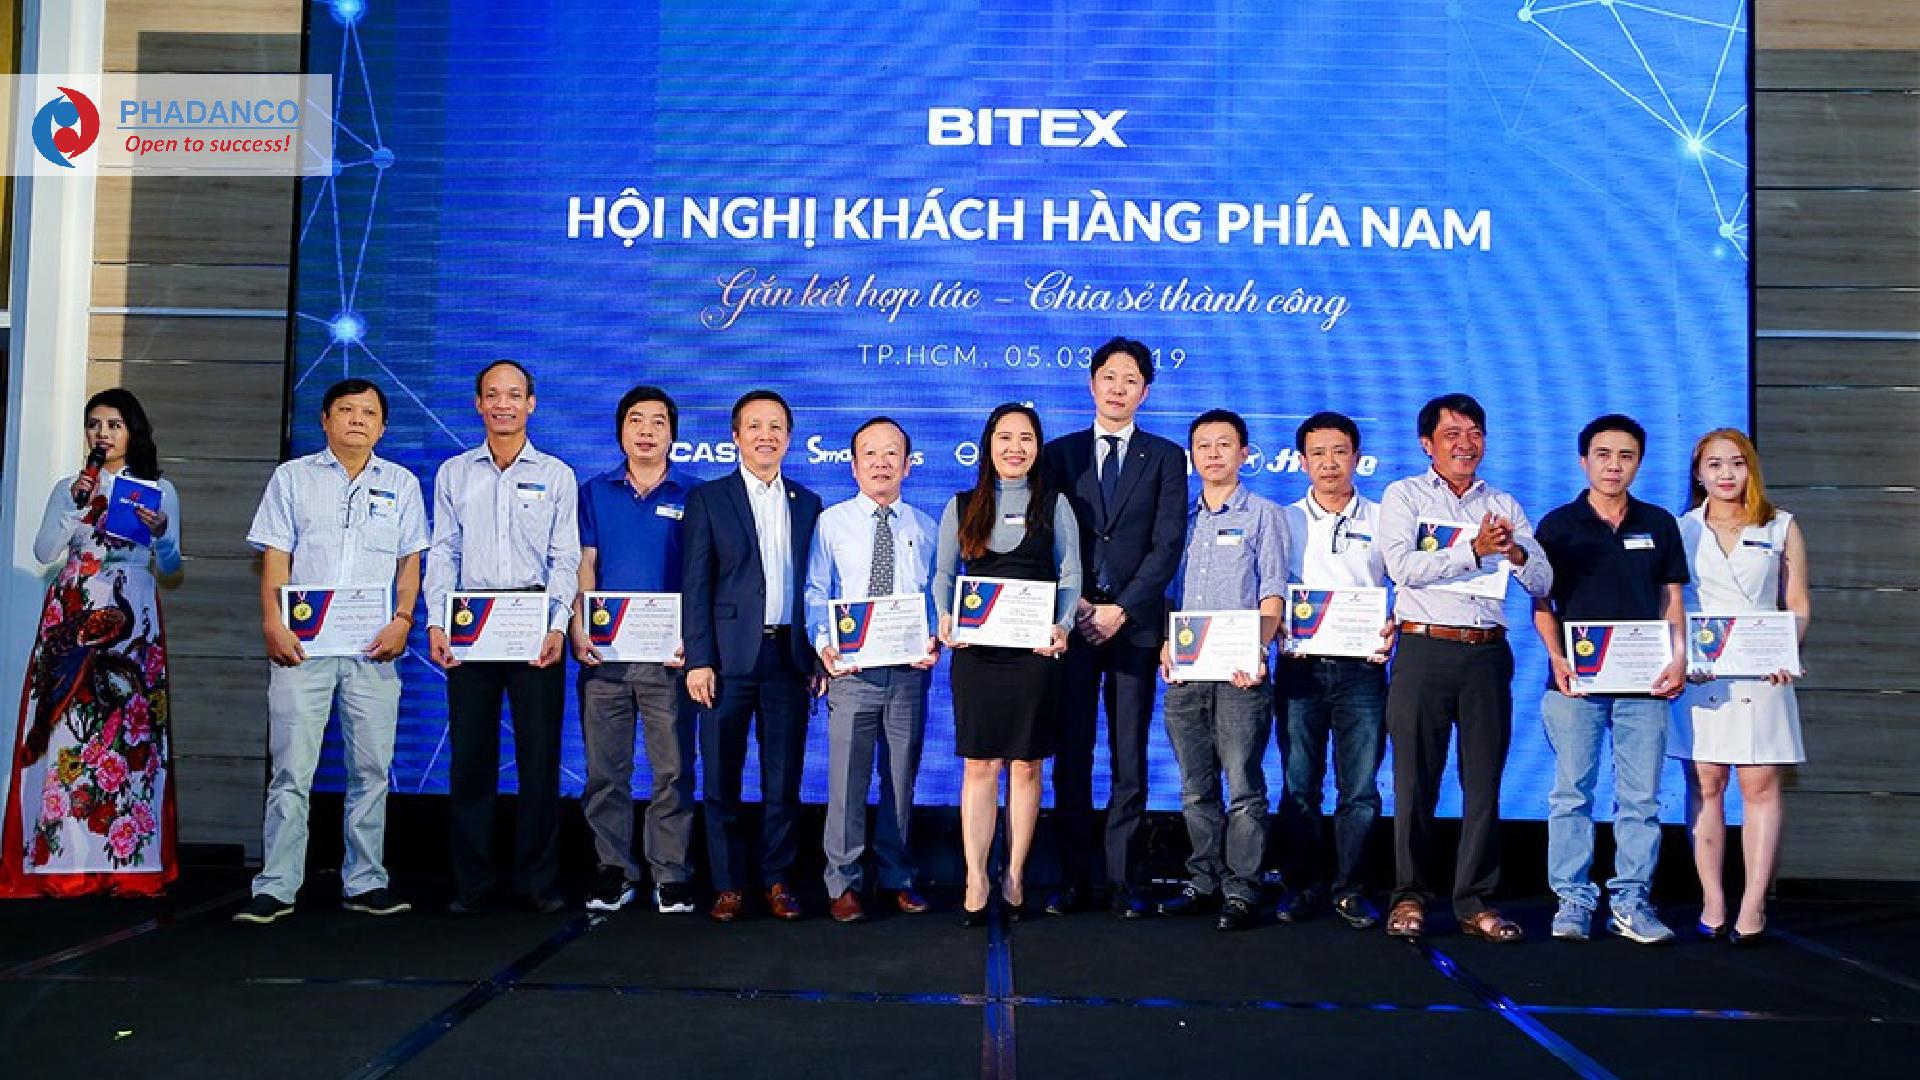 Công ty Truyền Thông Phan Đăng tổ chức hội nghị tri ân khách hàng cho Công ty Bitex